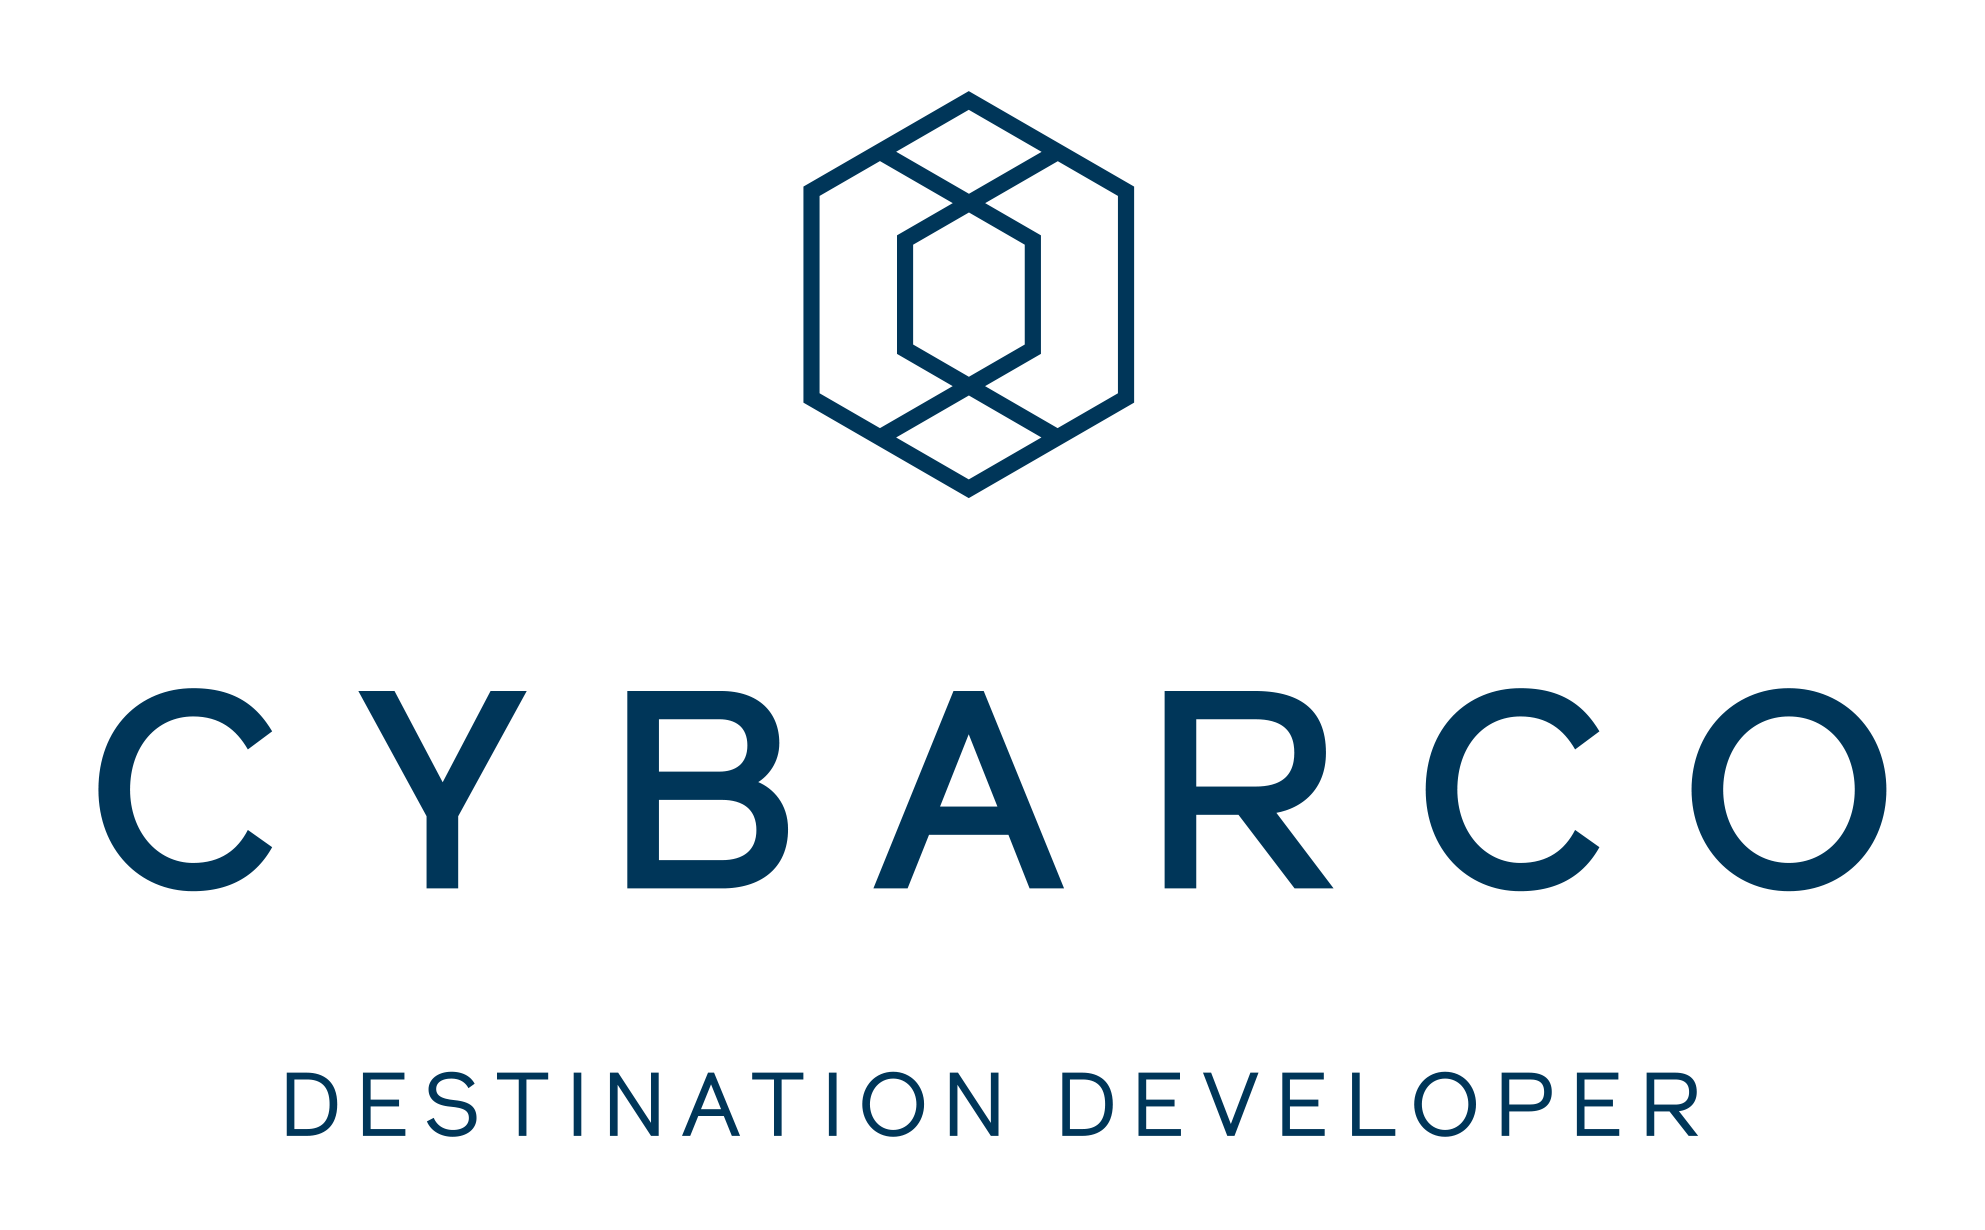 Cybarco Logo